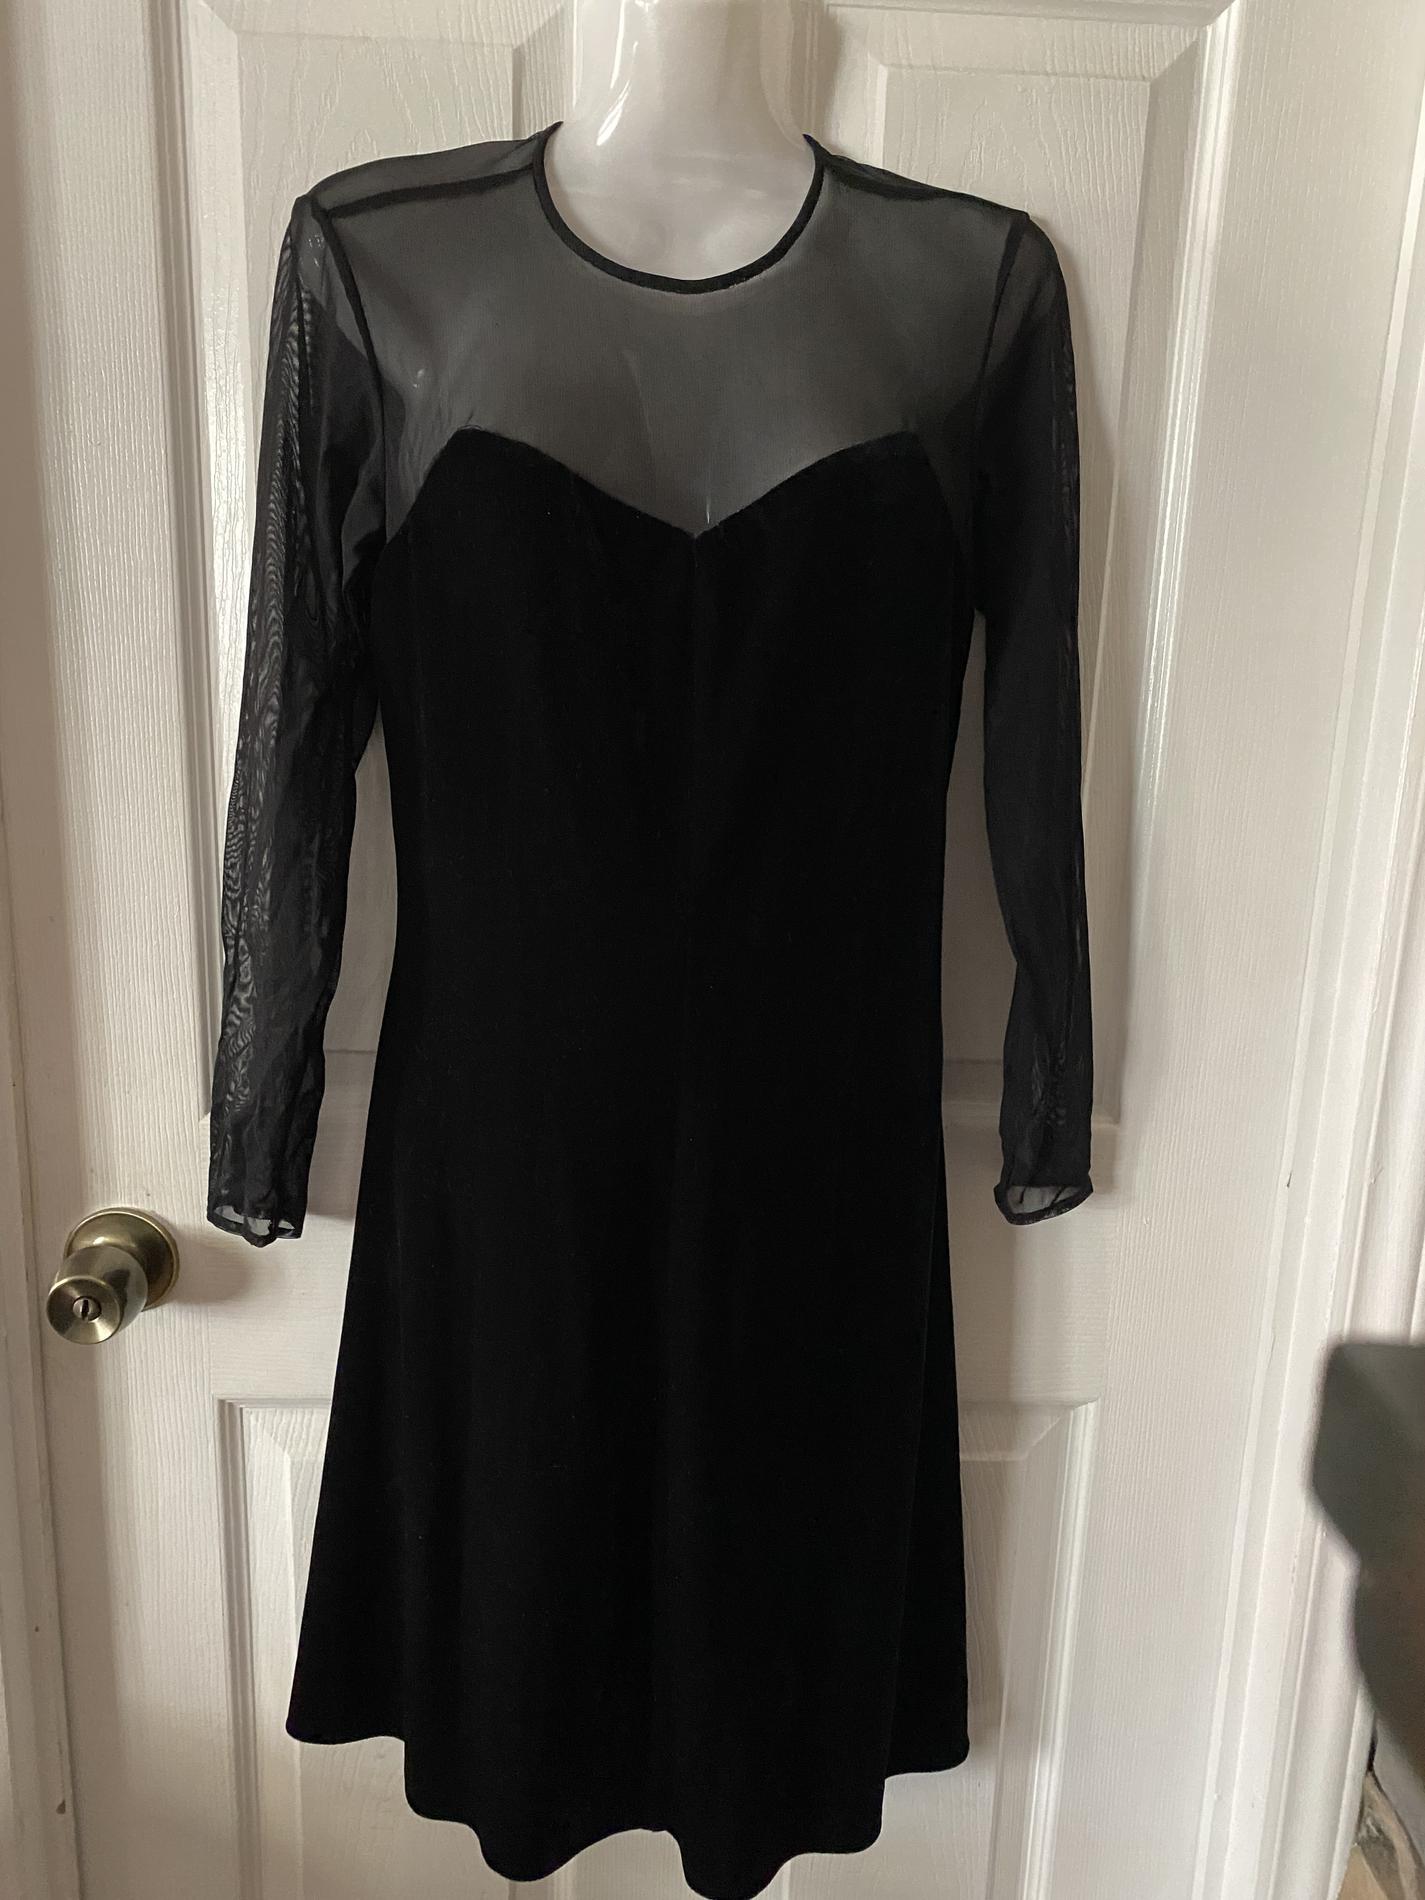 Niki by Niki Livas Size 10 Velvet Black A-line Dress on Queenly